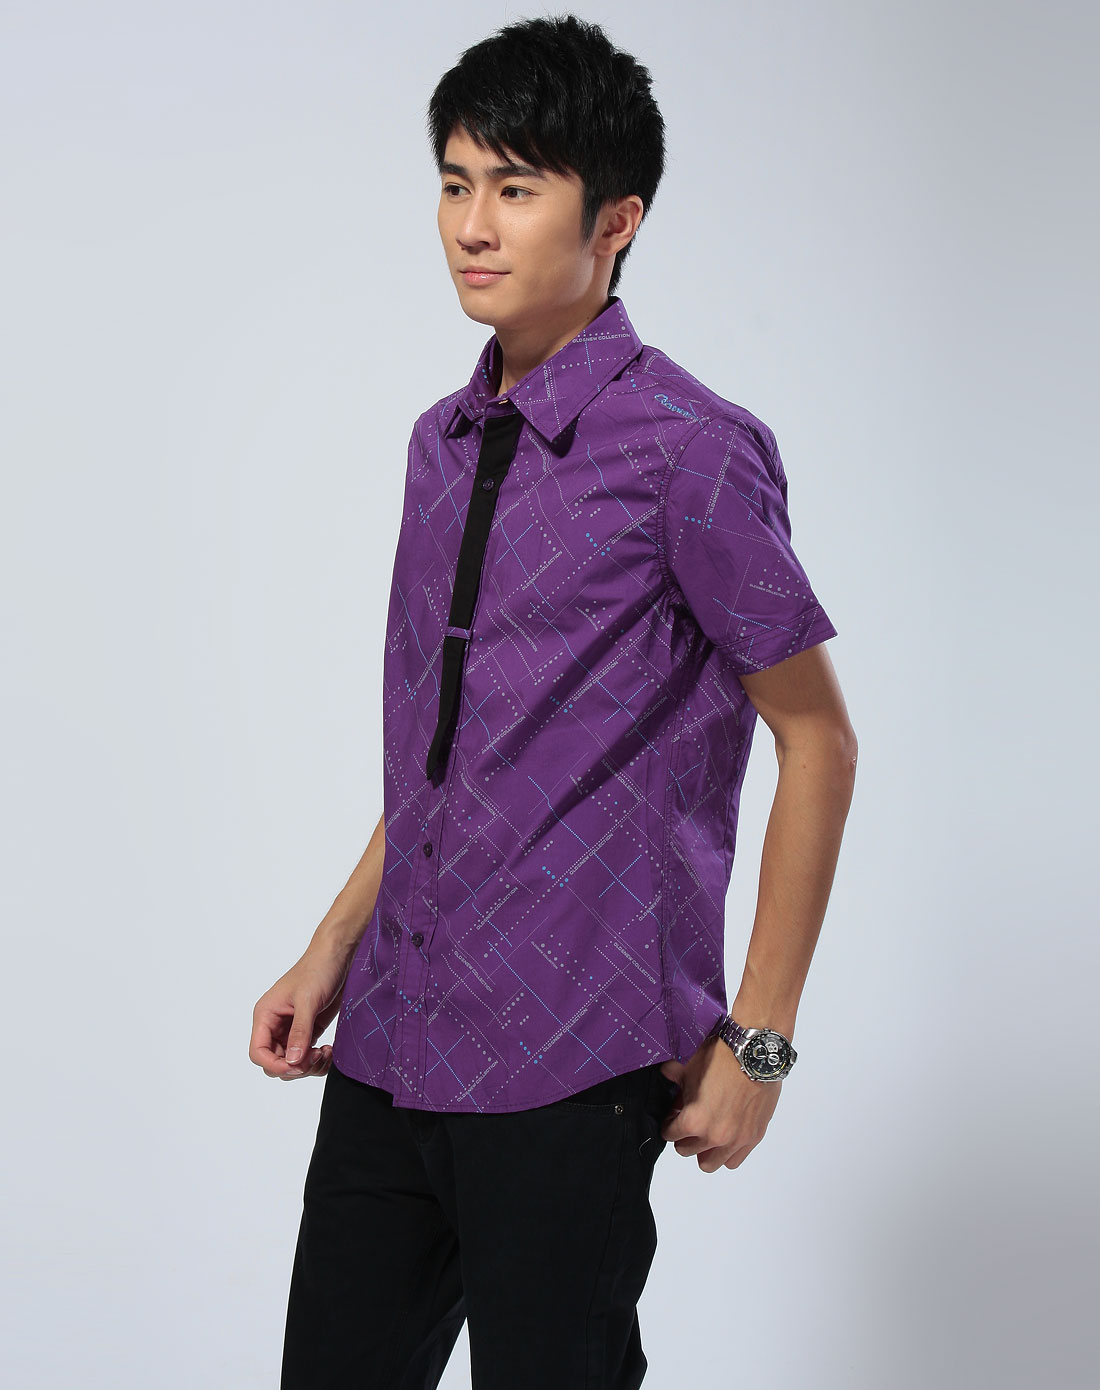 男装休闲专场鎏恒色 深紫色圆点印花领带拼接短袖衬衫